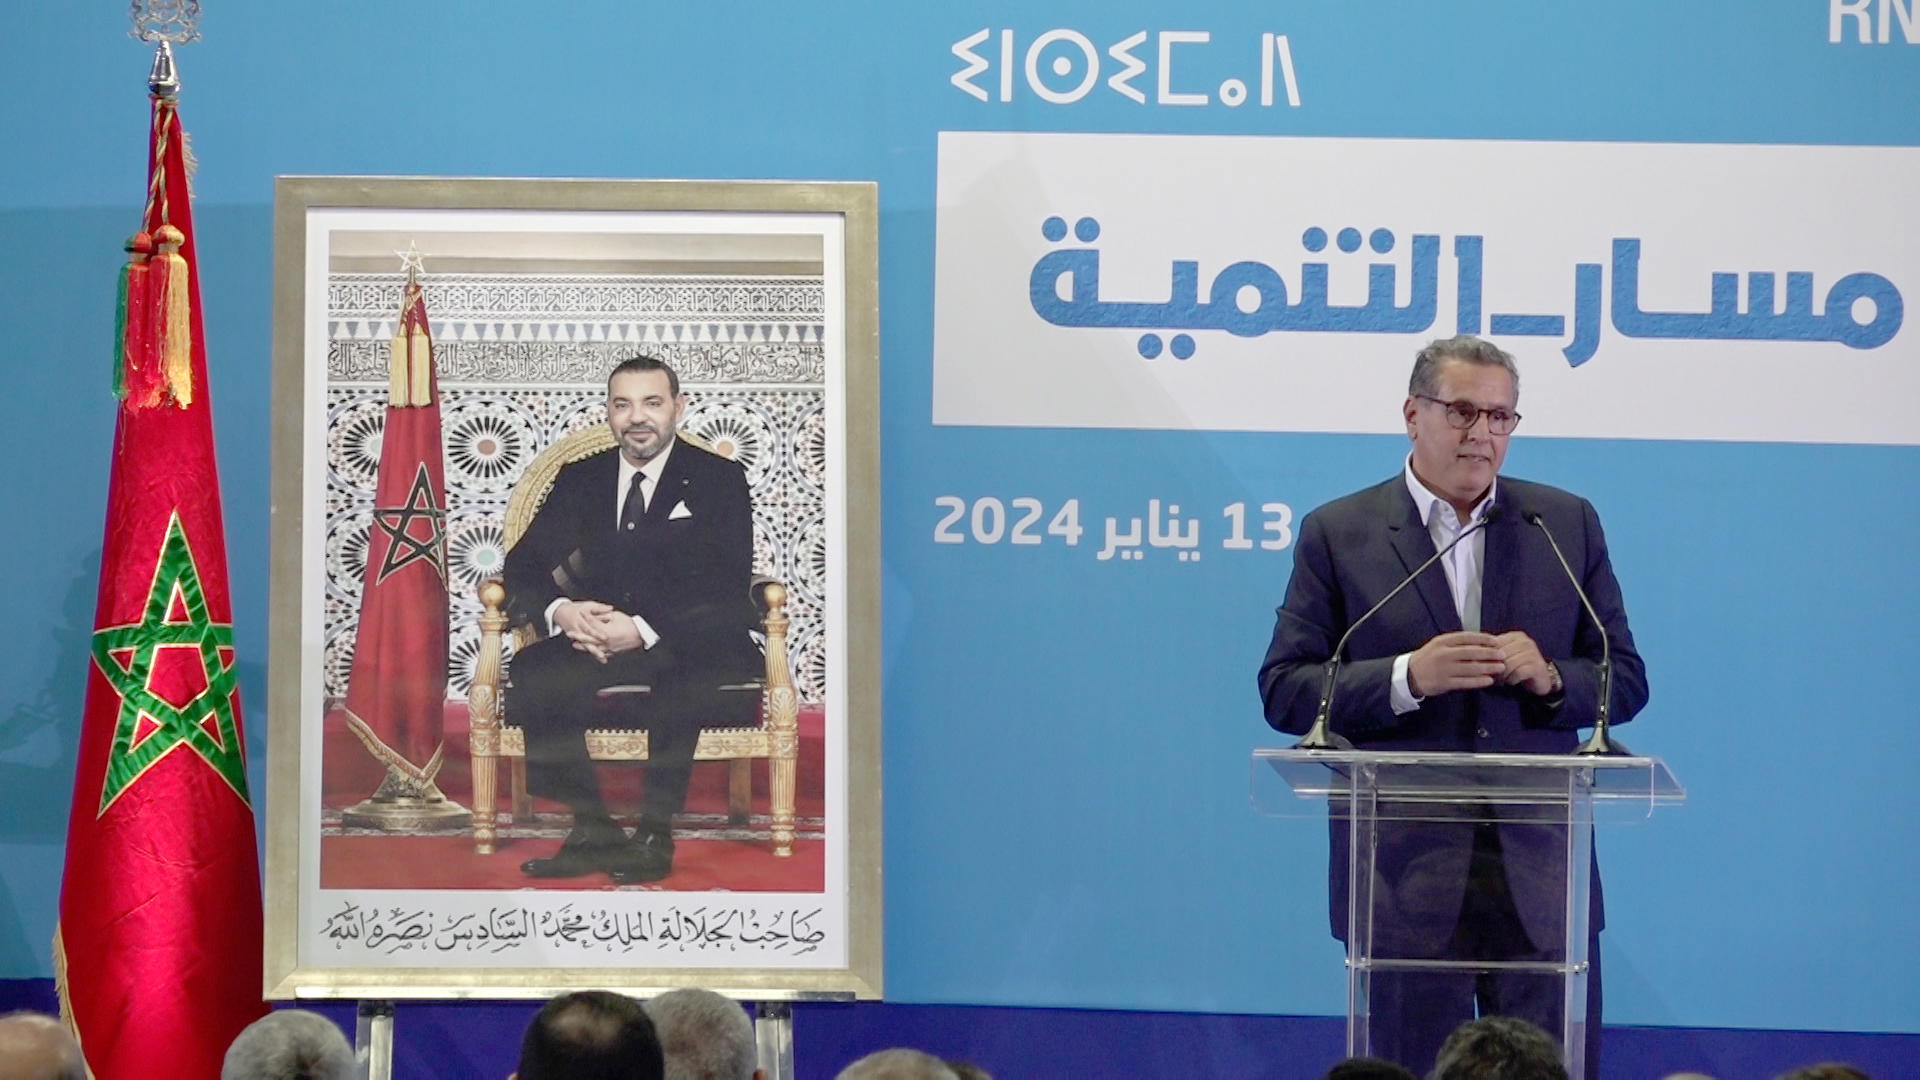 Maroc : Akhannouch reconnait publiquement qu’il y a un gros problème d’eau et que le royaume a tardé à agir